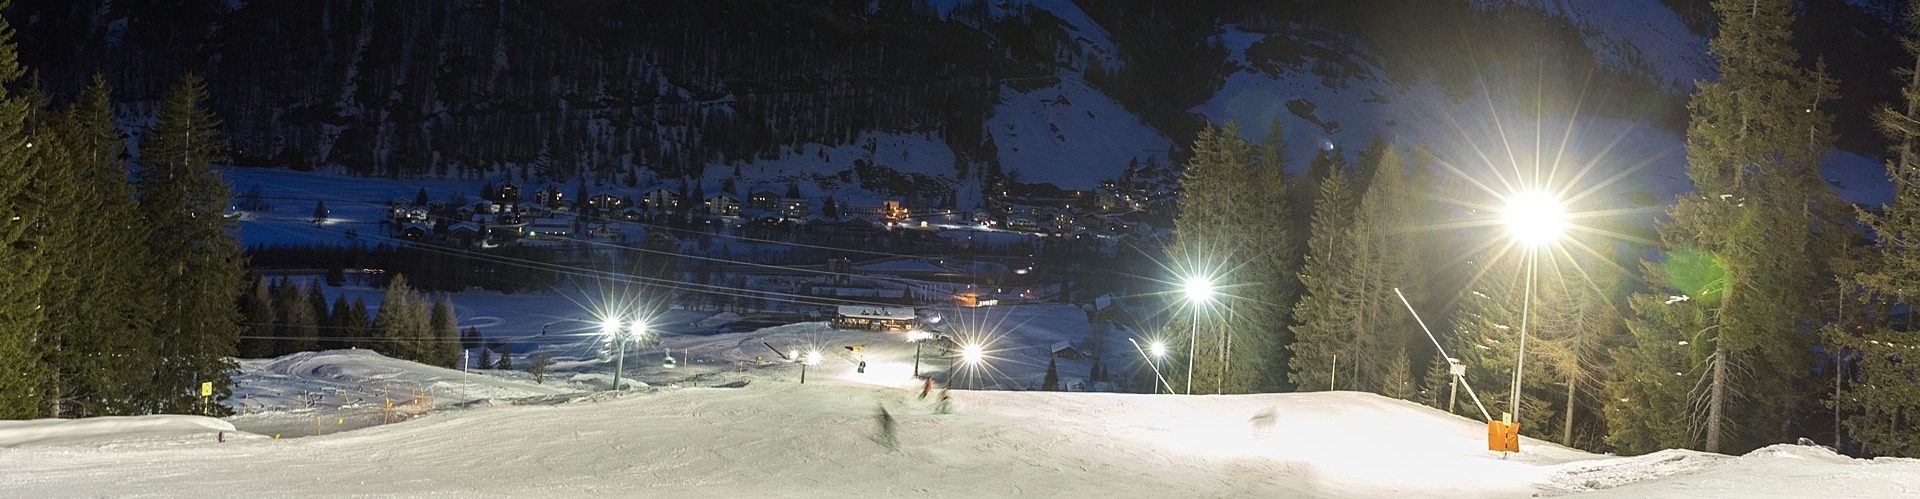 Nachtskifahren im Skigebiet Tambo mit Blick auf Dorf Splügen